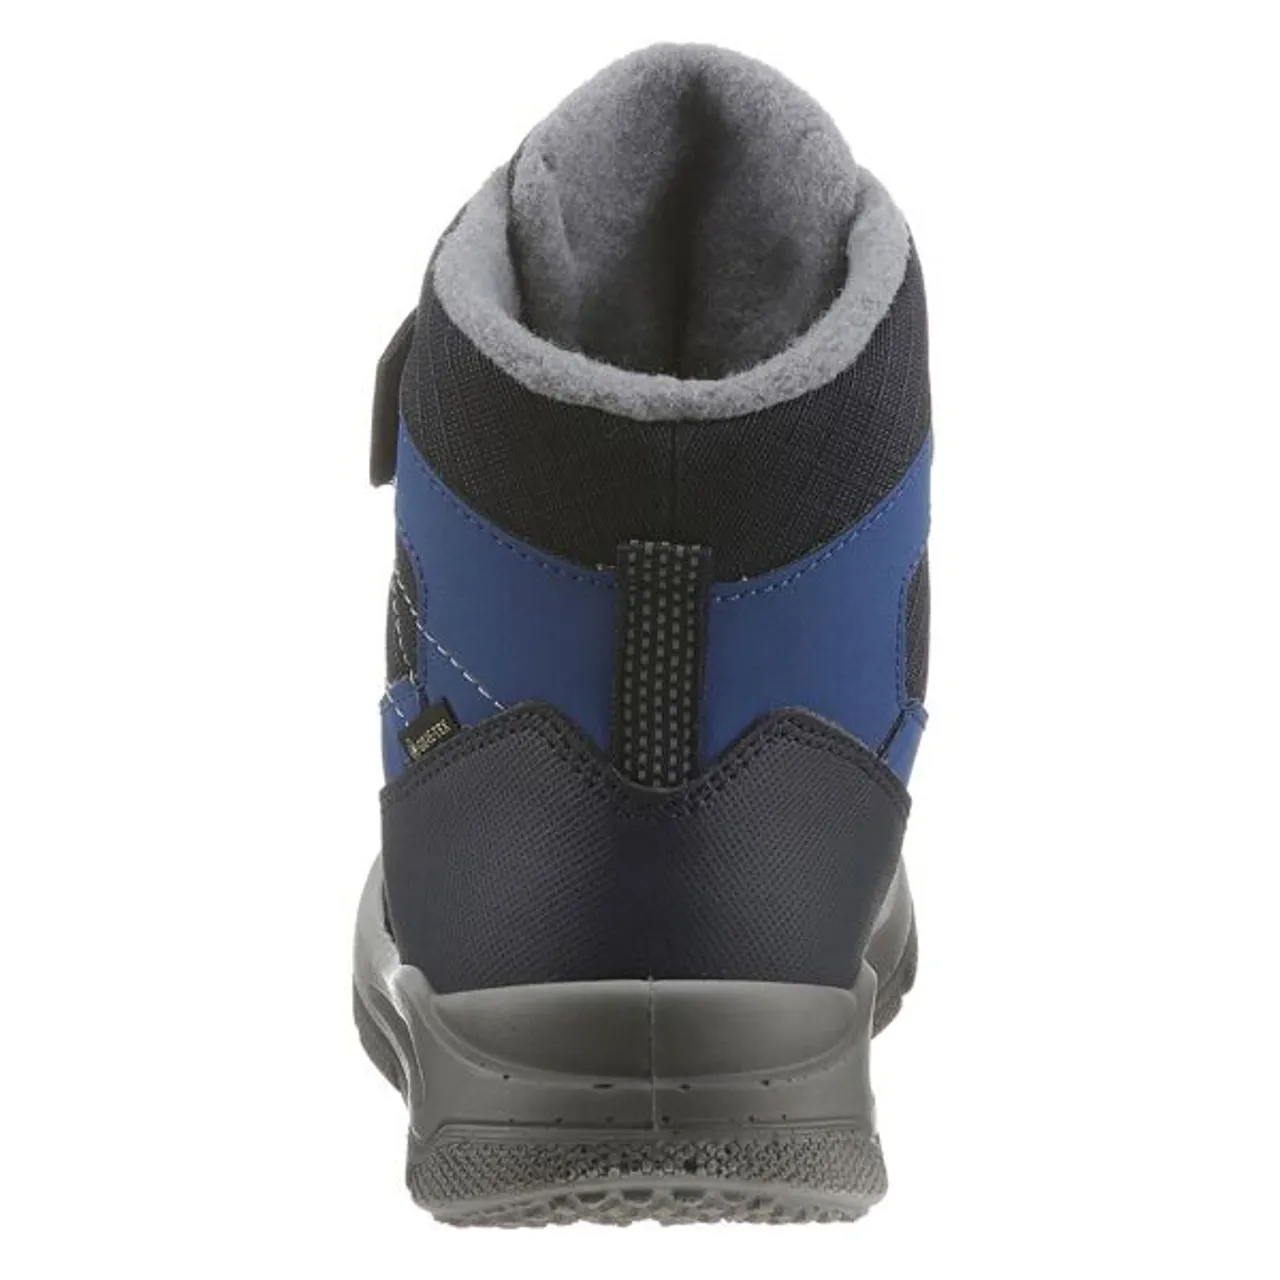 Winterboots SUPERFIT "MARS WMS: Mittel" Gr. 27, blau (blau, grau) Kinder Schuhe Stiefel Boots